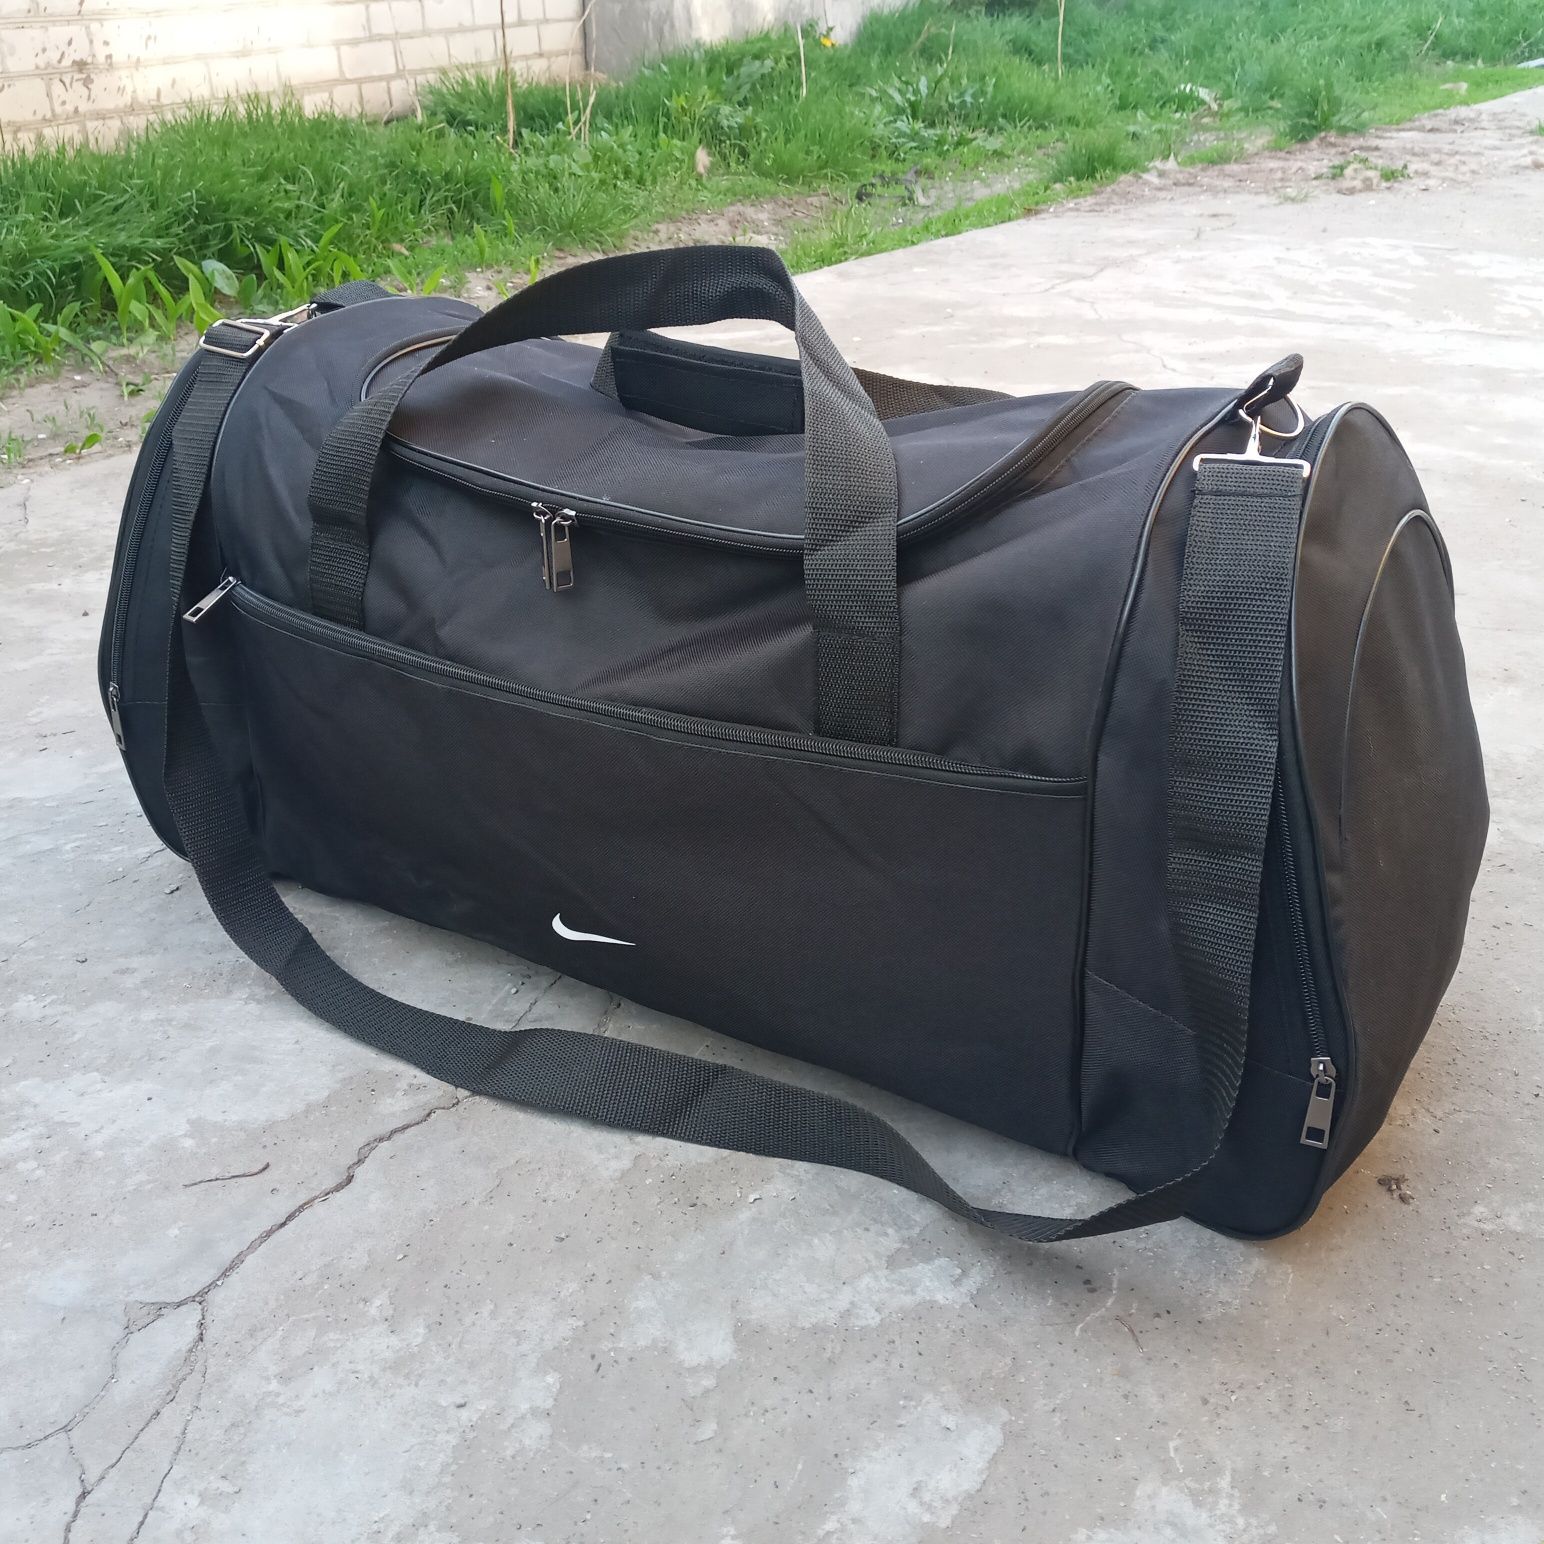 большая спортивная сумка 70 см дорожная для туризма велика рюкзак баул